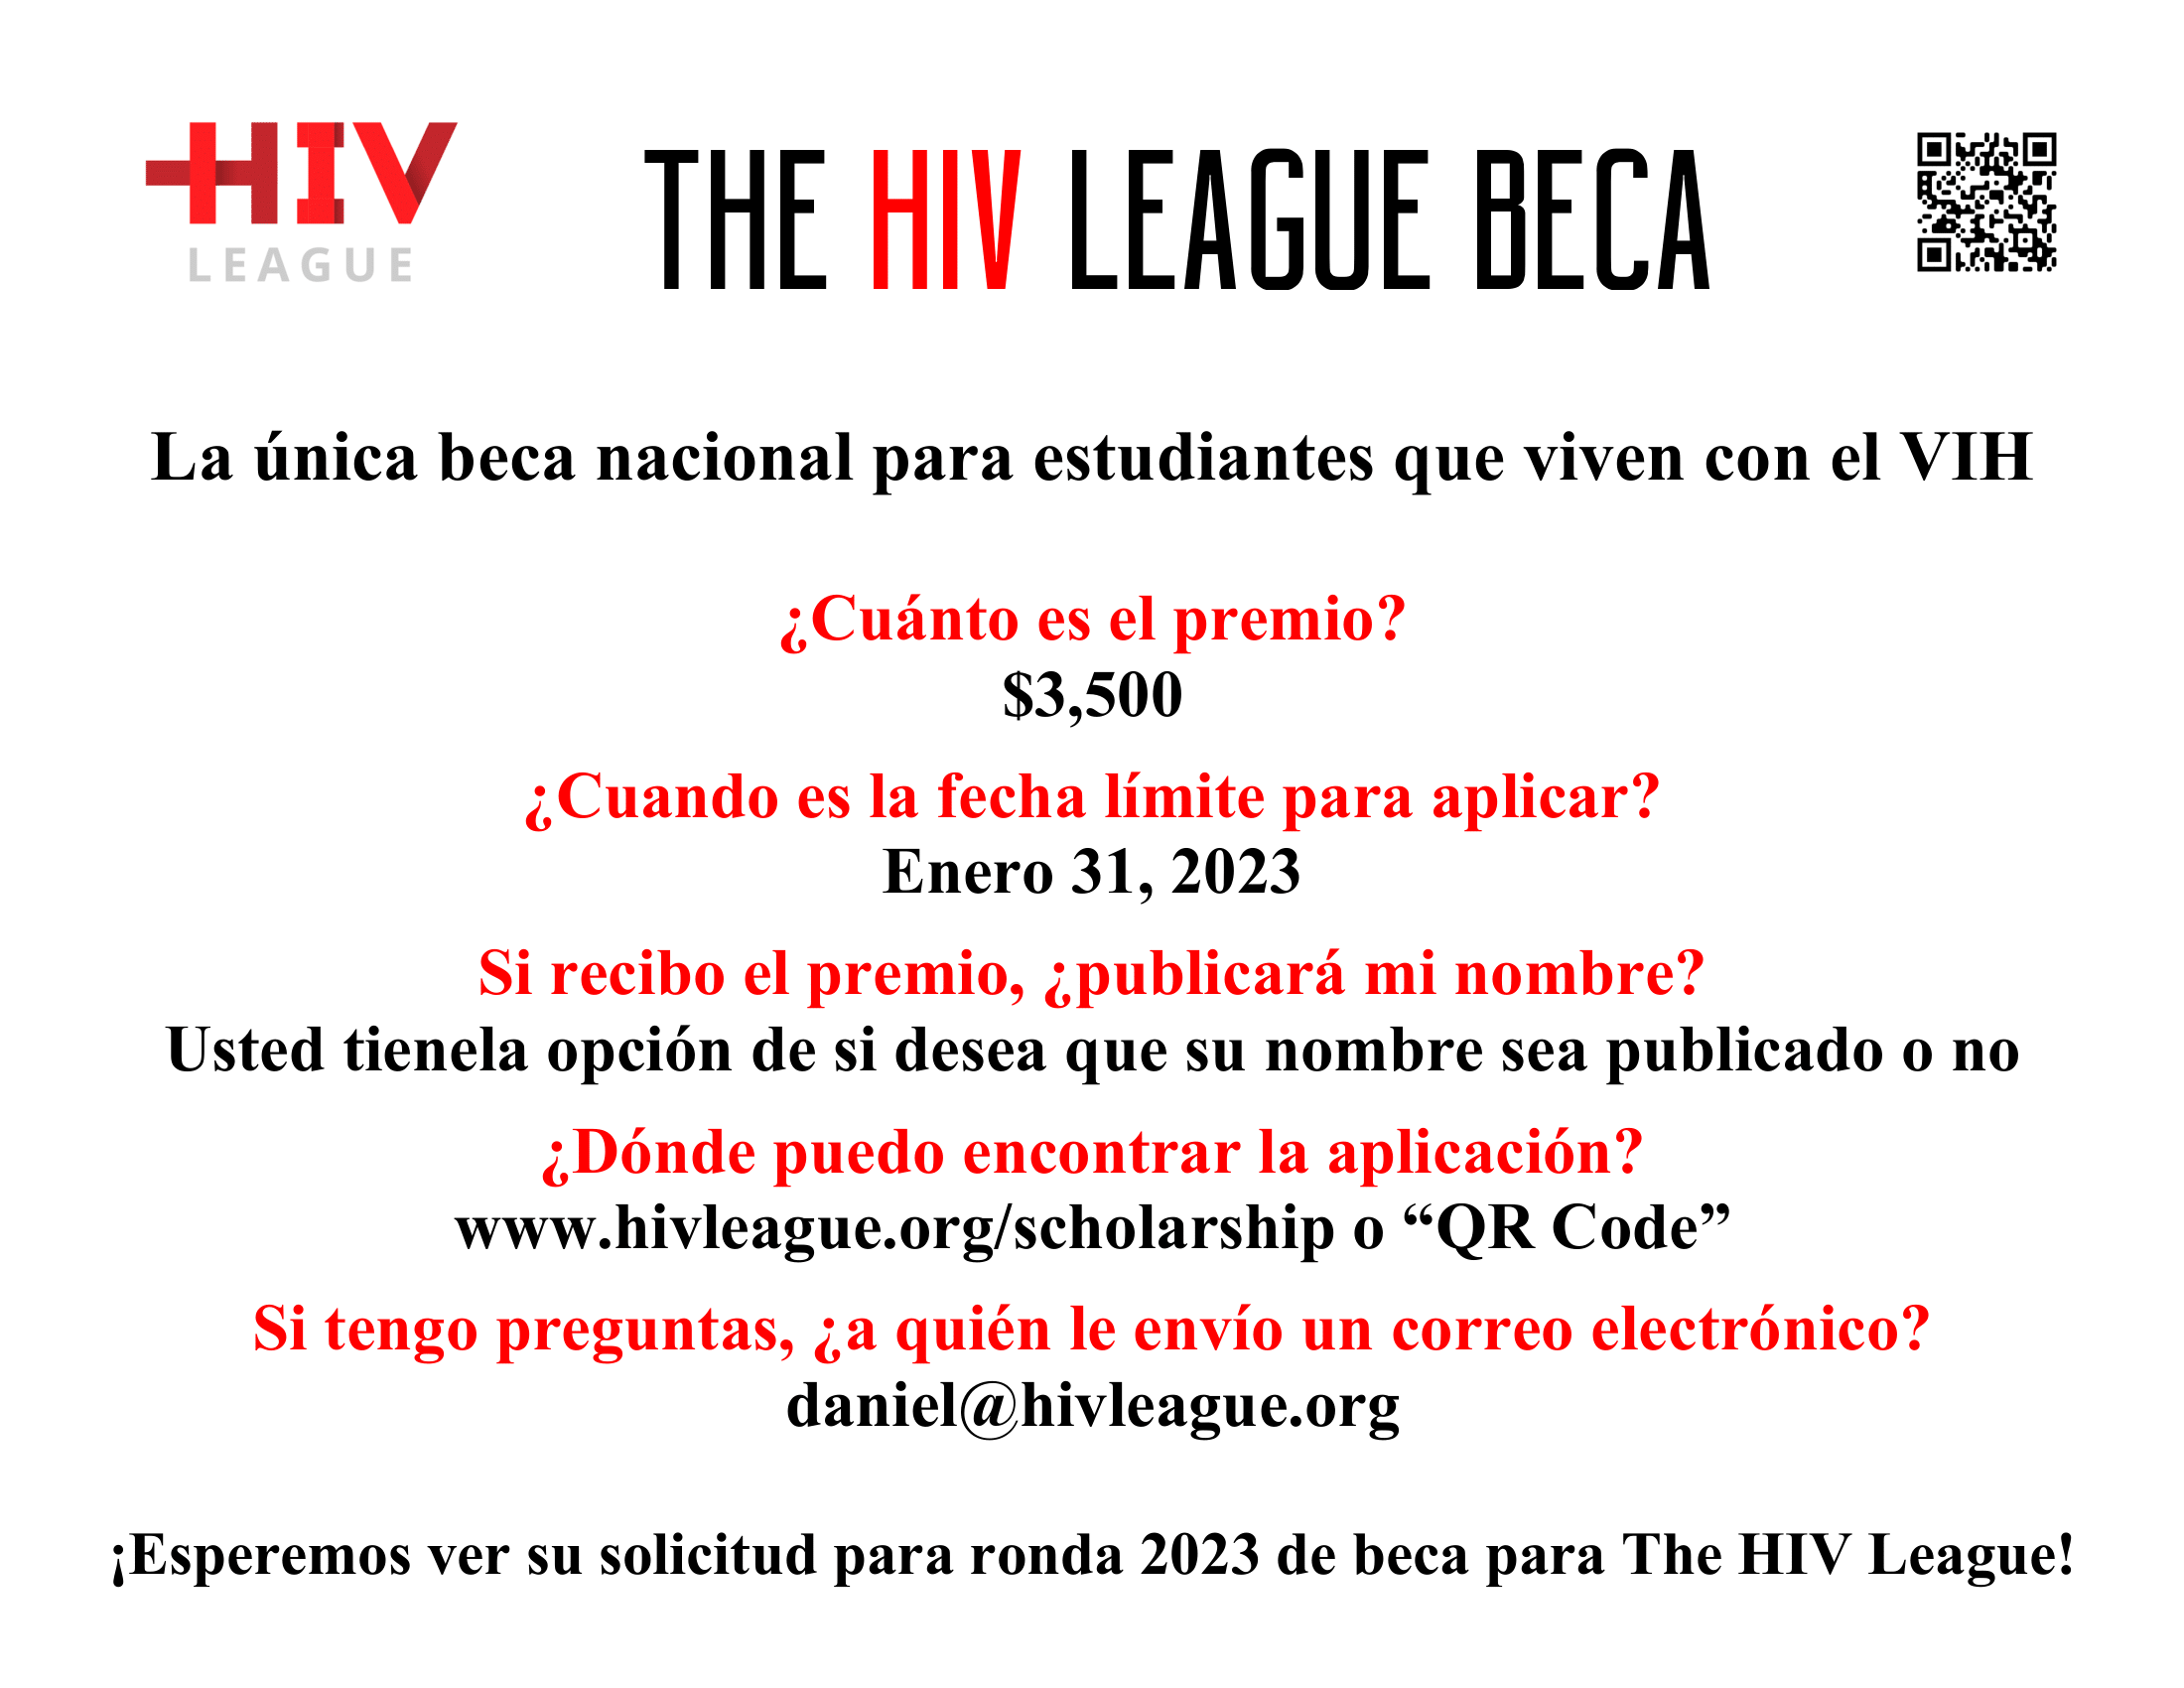 Folleto informativo de la Beca de la Liga del HIV League.